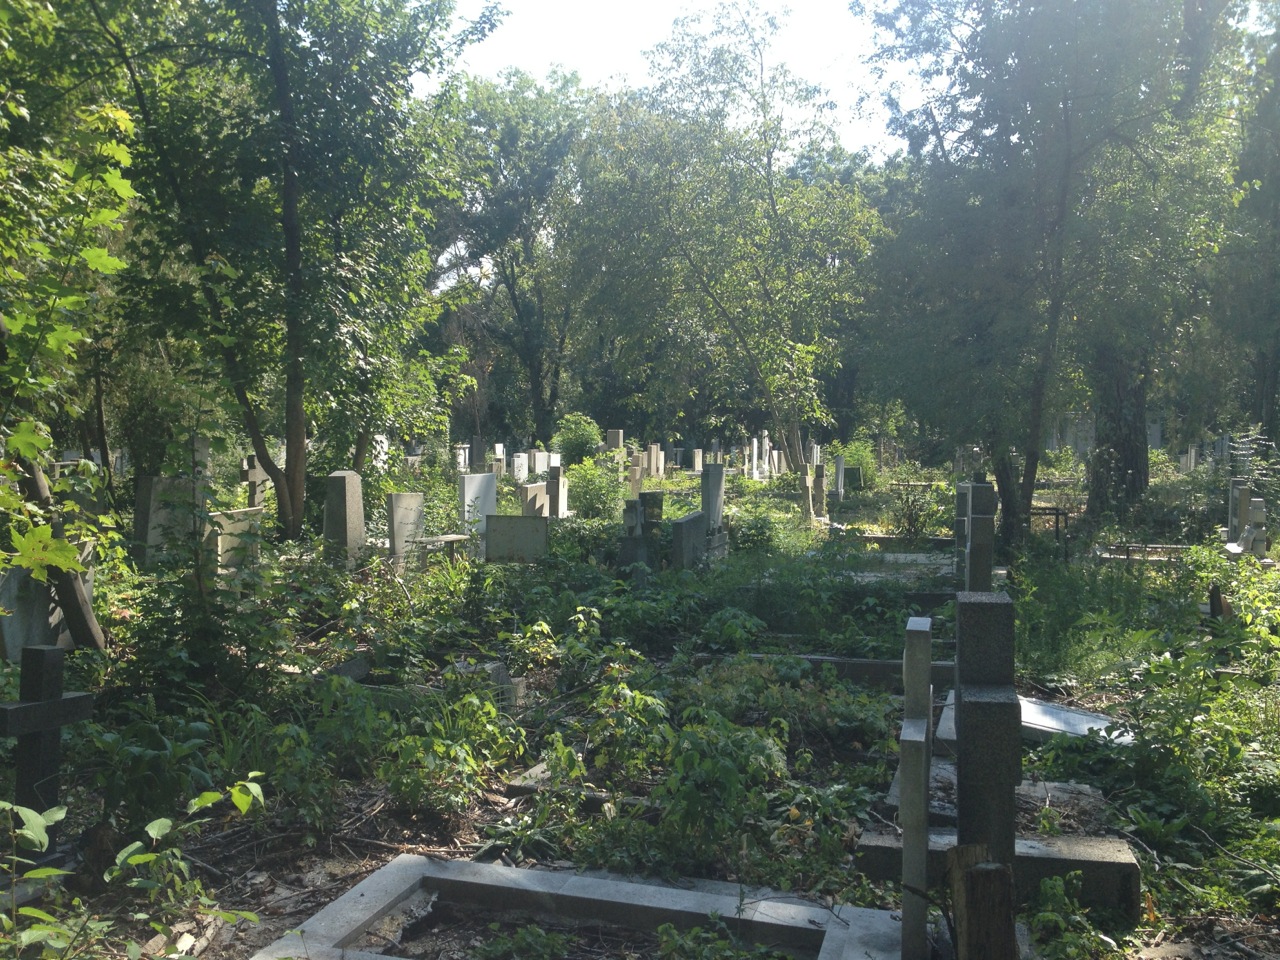 Central Sofia Cemetery